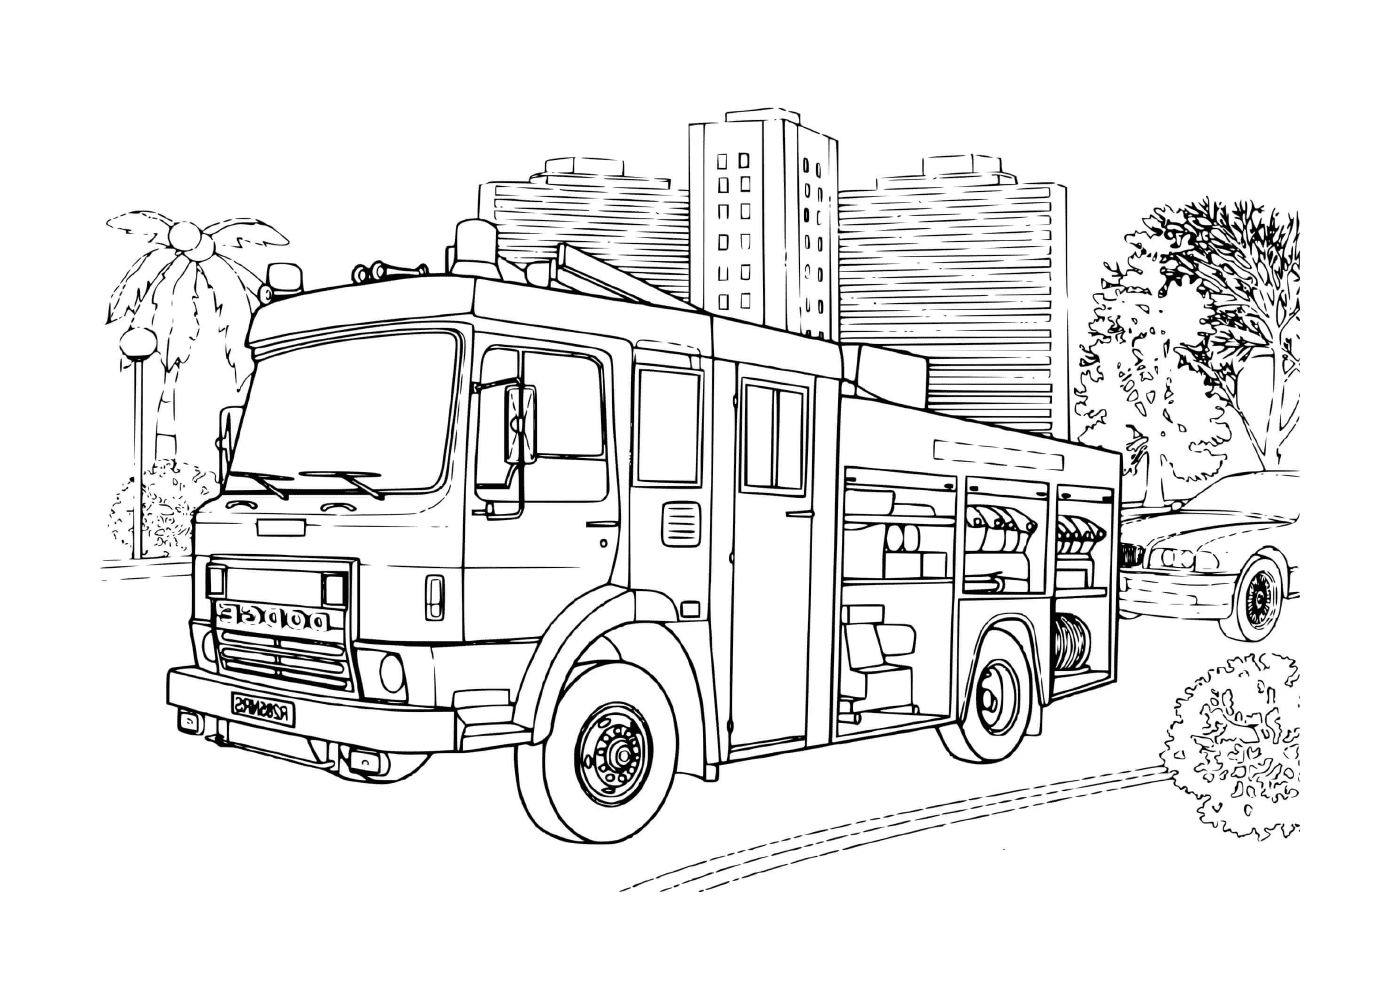  Пожарный грузовой автомобиль < < Додж > >, мощная передача 